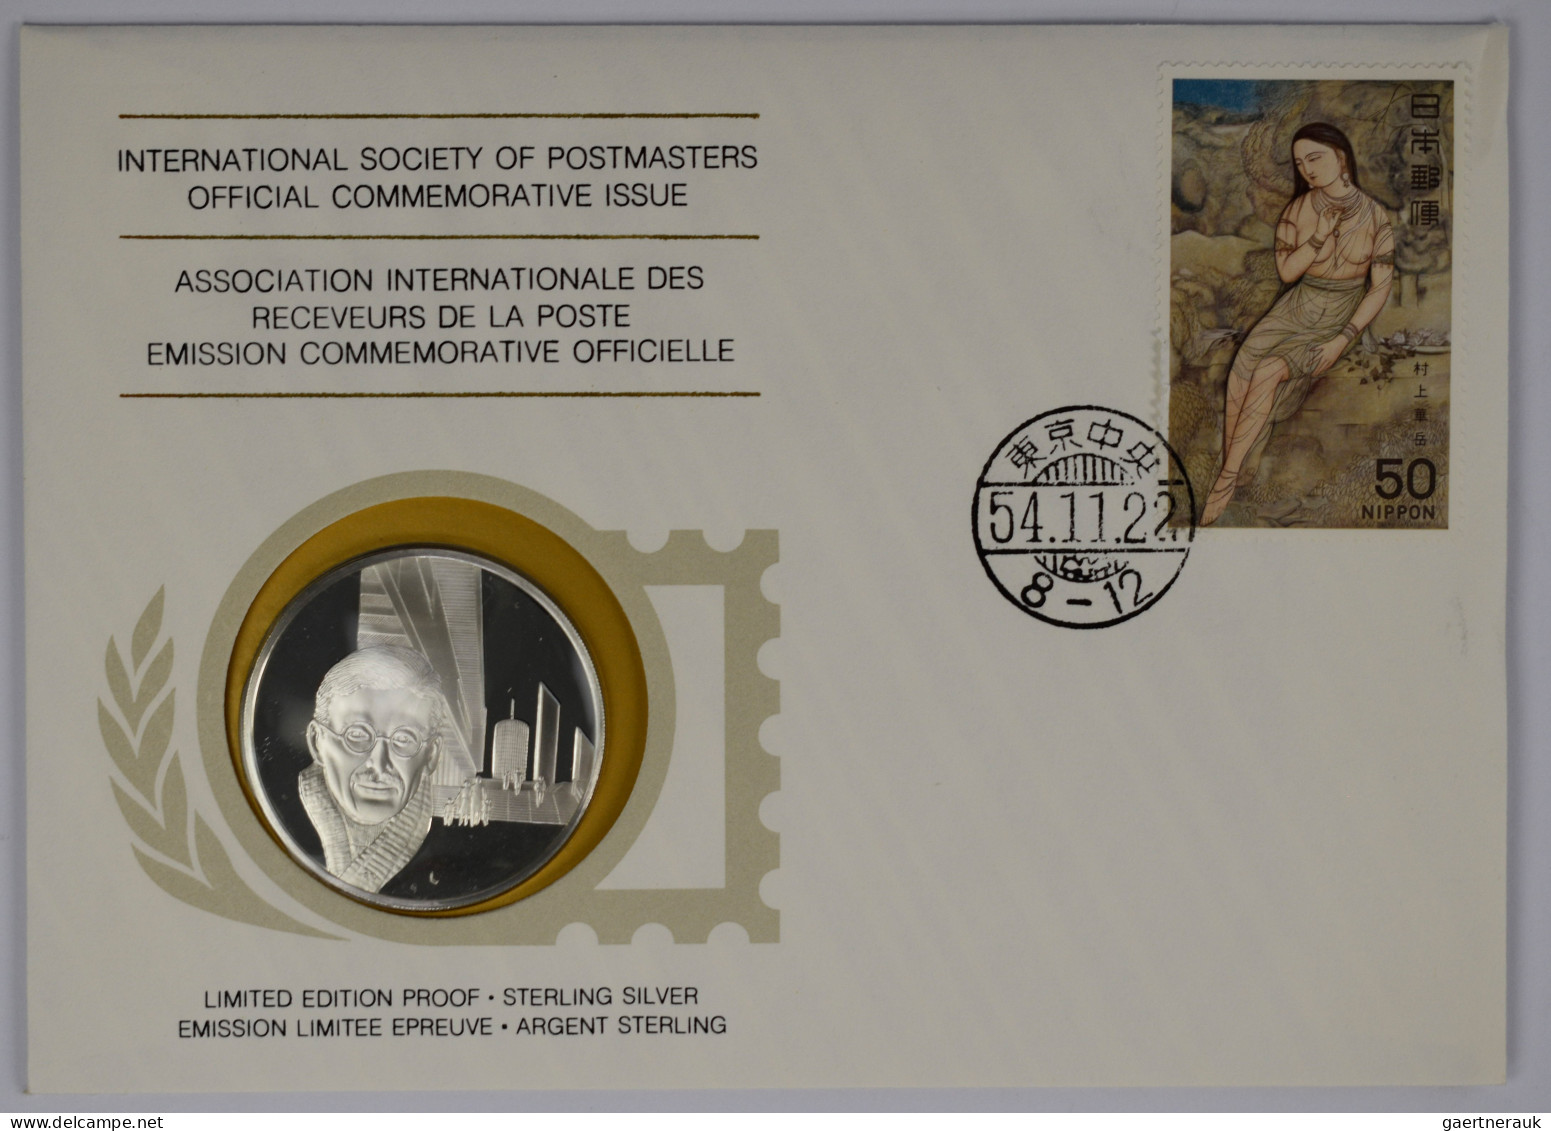 Numisbriefe, Numisblätter: Album International Society of Postmasters mit 36 Num